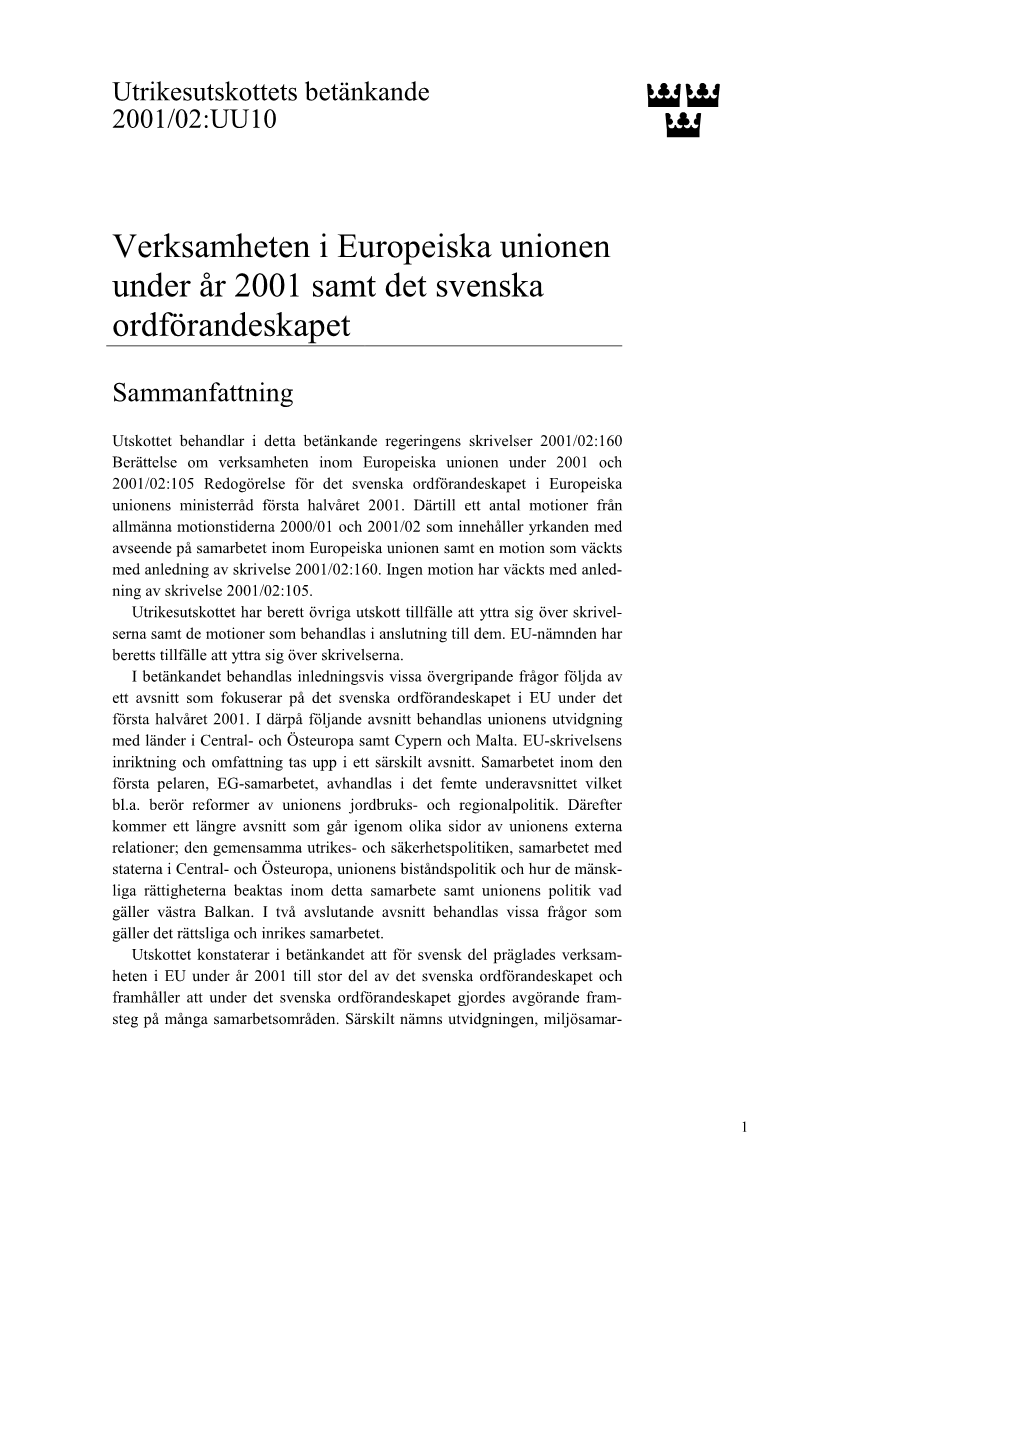 Verksamheten I Europeiska Unionen Under År 2001 Samt Det Svenska Ordförandeskapet